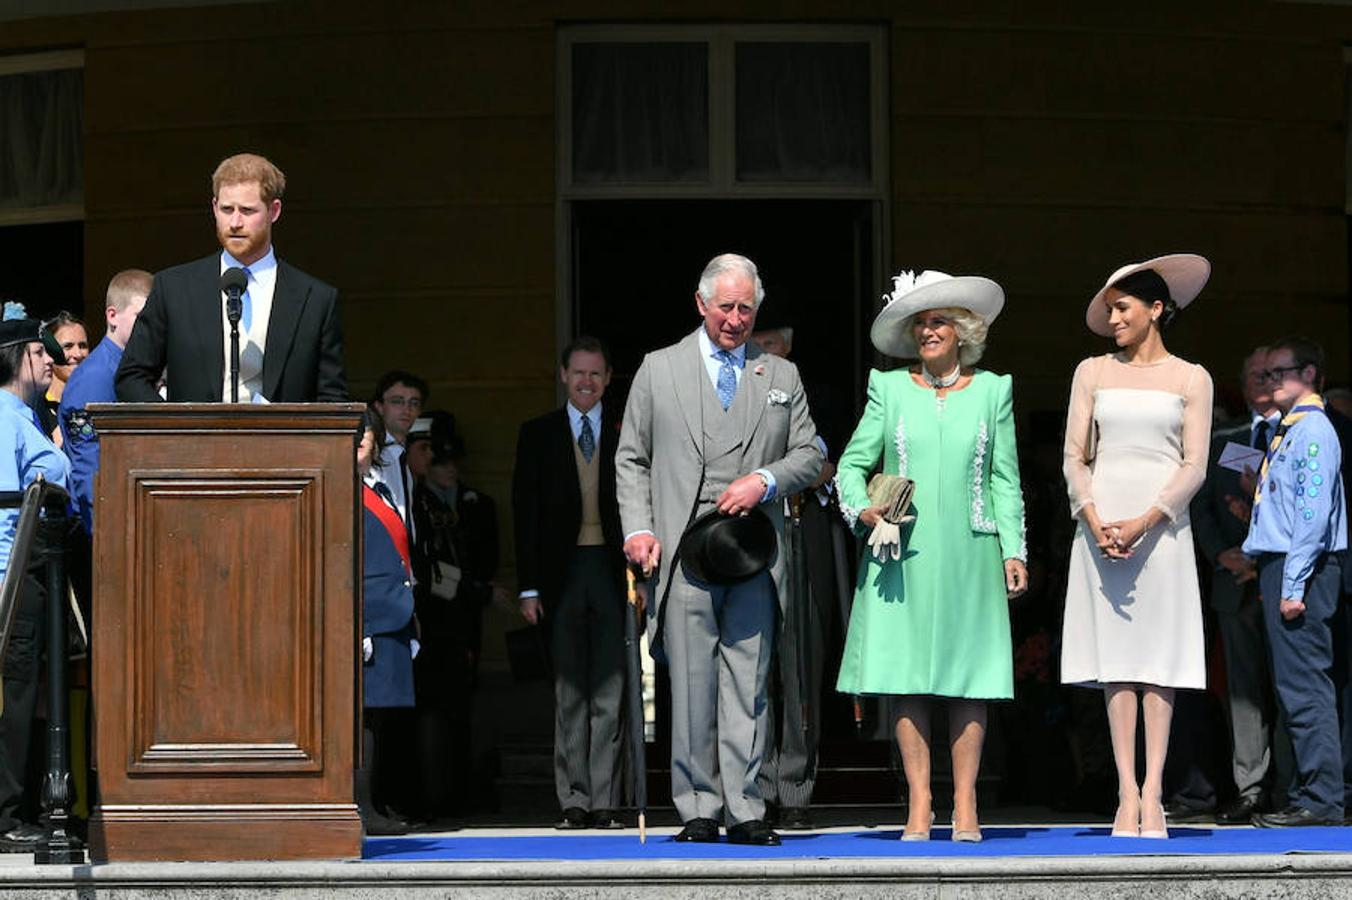 Los duques de Sussex han acudido hoy a su primer acto como marido y mujer, tras contraer matrimonio el pasado 19 de mayo en la capilla de San Jorge, en el castillo de Windsor.